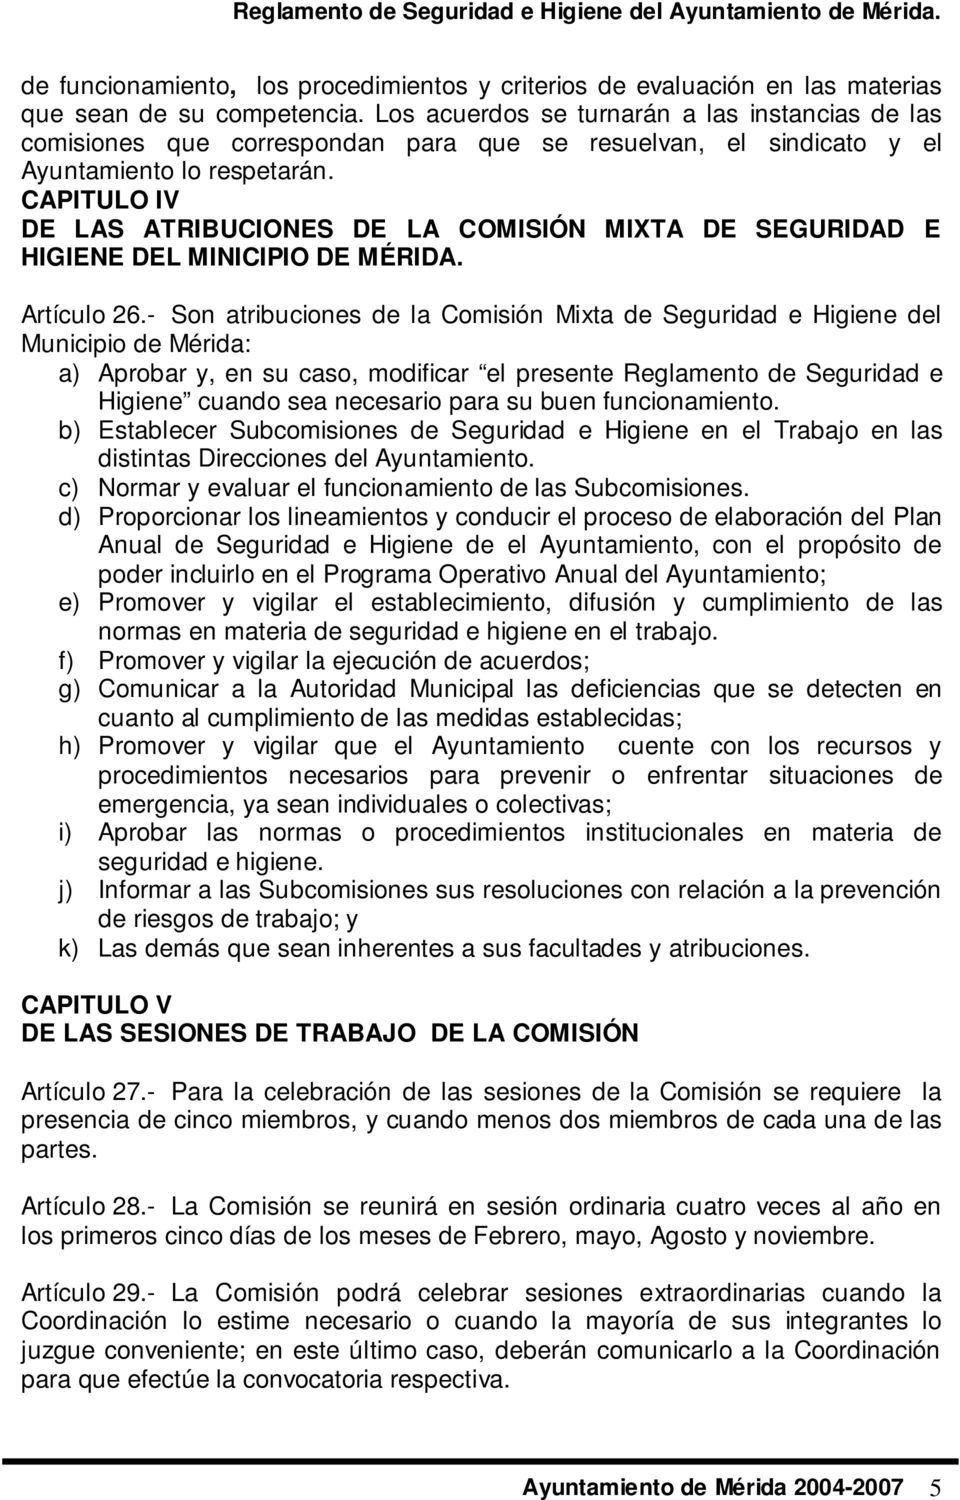 CAPITULO IV DE LAS ATRIBUCIONES DE LA COMISIÓN MIXTA DE SEGURIDAD E HIGIENE DEL MINICIPIO DE MÉRIDA. Artículo 26.